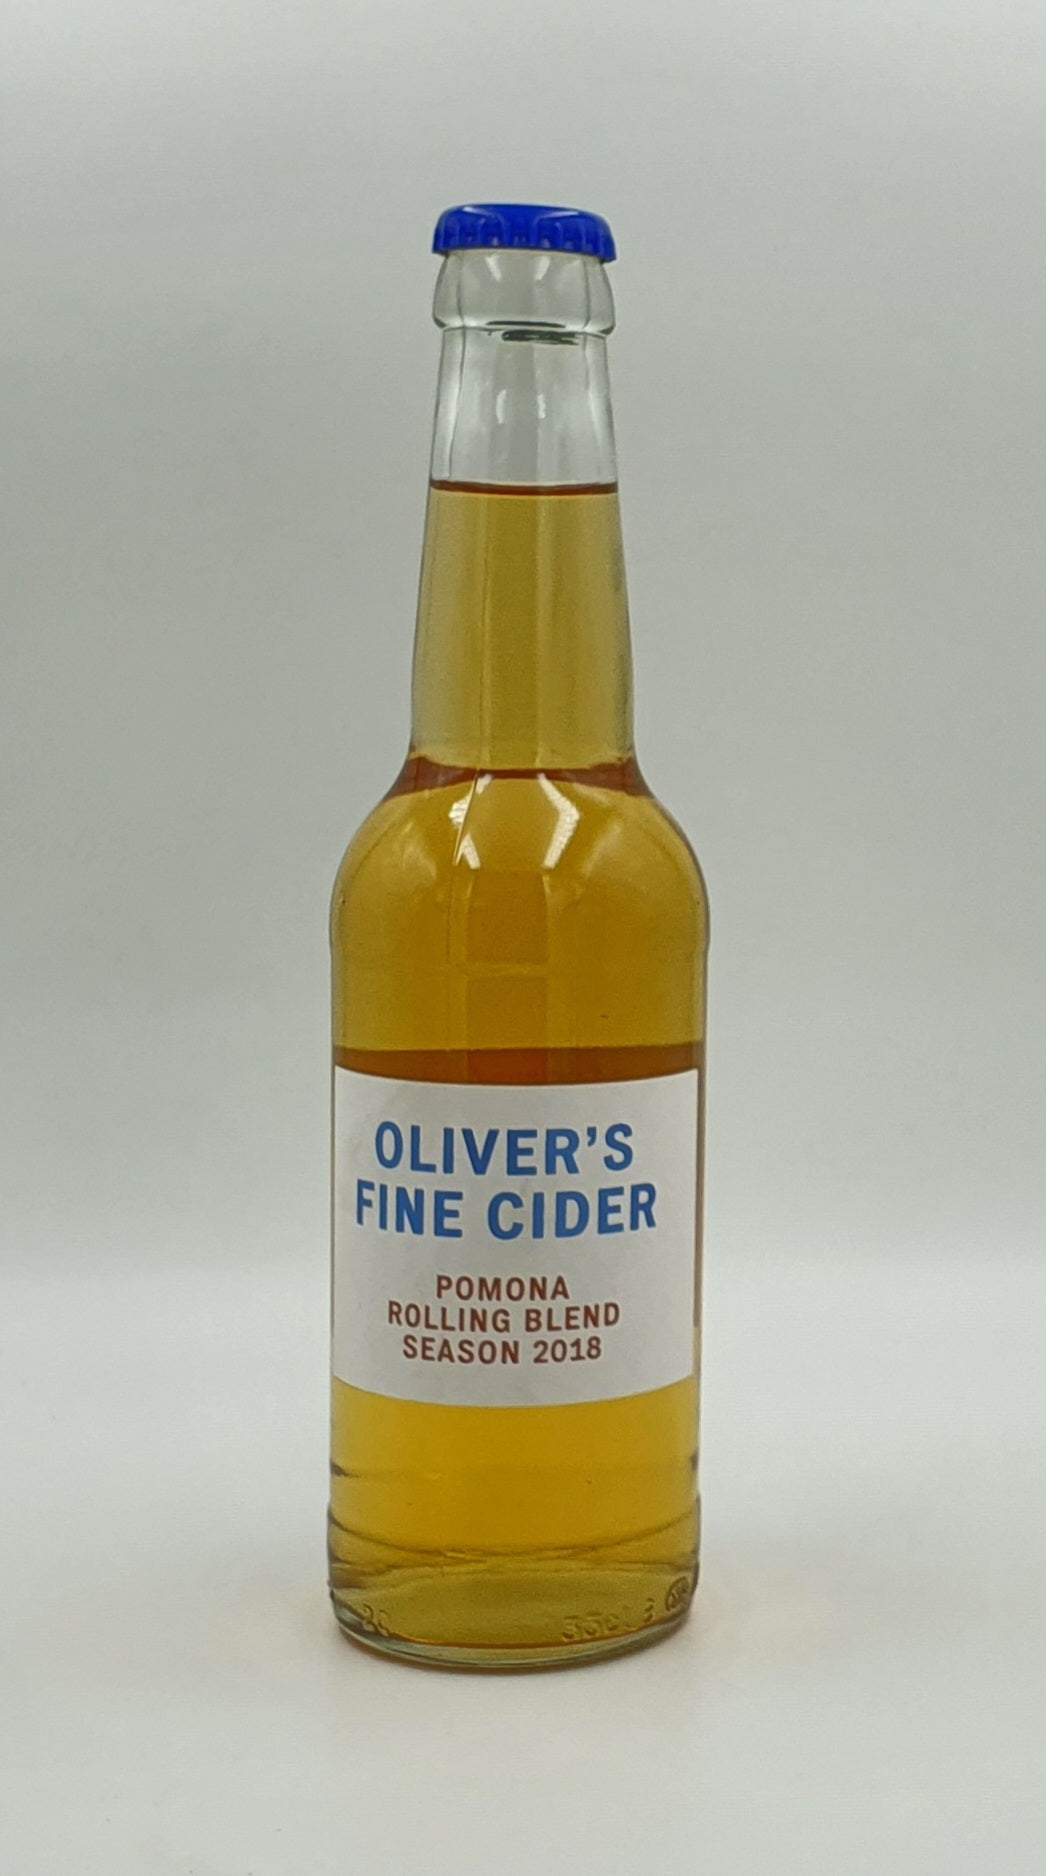 Pomona Rolling Blend Season 2018 - Oliver's - Medium/Dry Cider, 6.8%, 330ml Bottle